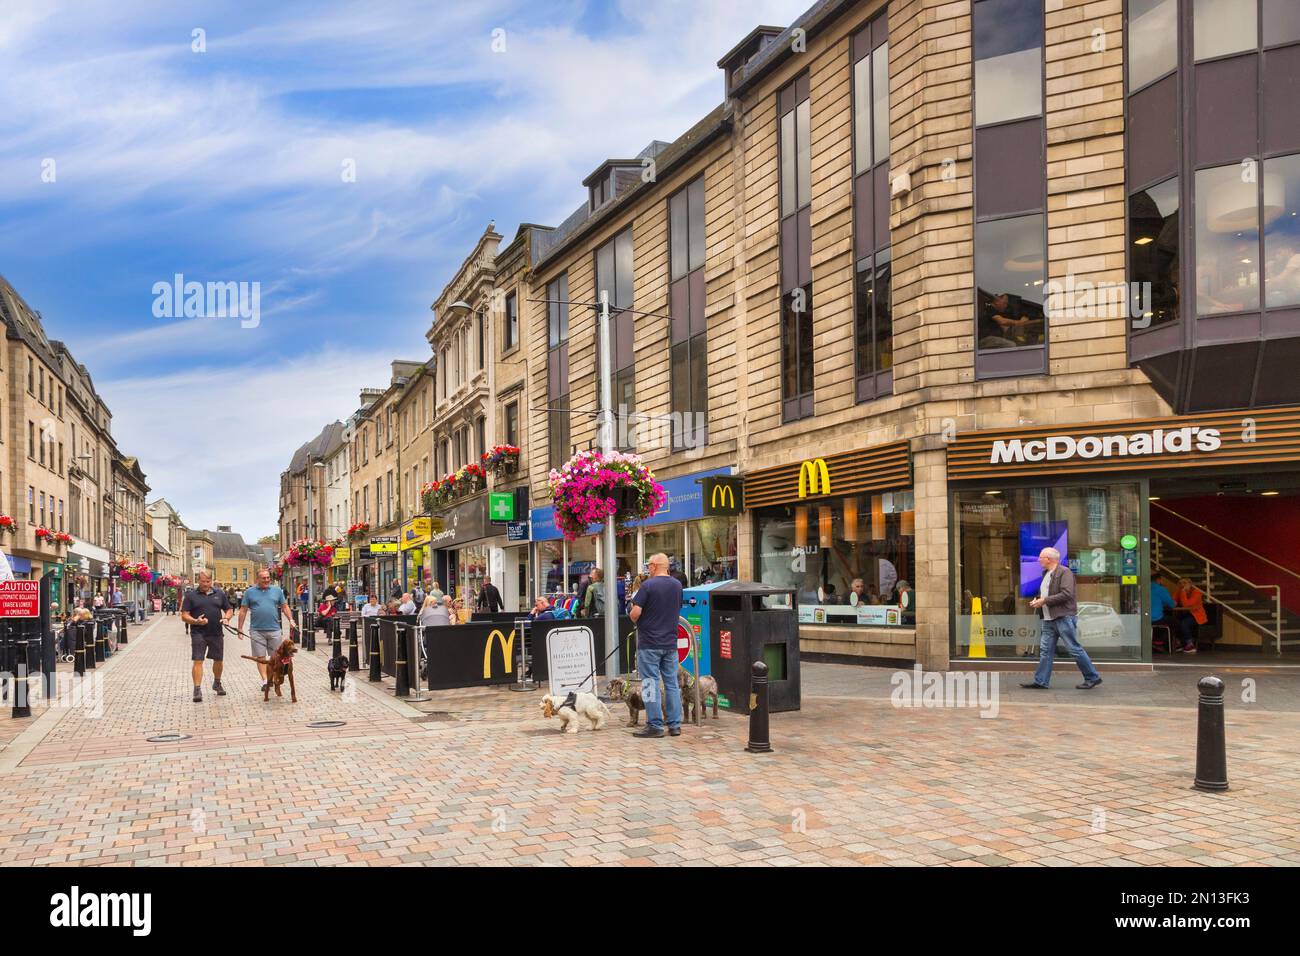 5. September 2022: Inverness, Highland, Schottland - Ein warmer Frühherbsttag in High Street, Inverness, mit Menschen, Hunden, Straßencafés, McDonalds... Stockfoto